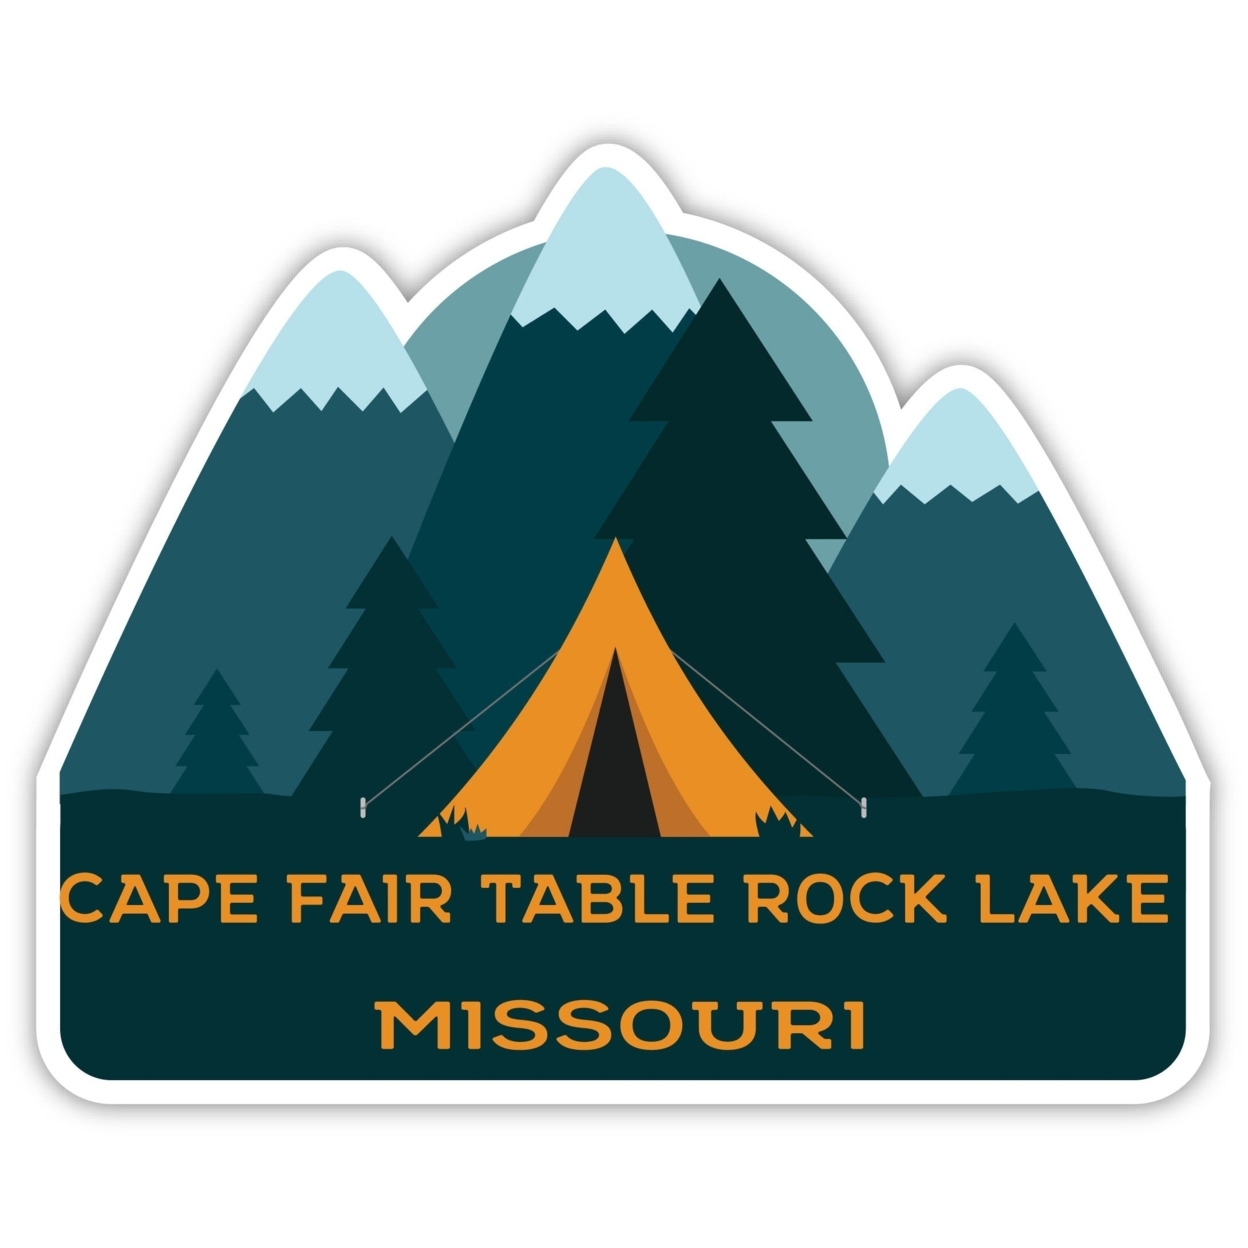 Cape Fair Table Rock Lake Missouri Souvenir Decorative Stickers (Choose Theme And Size) - Single Unit, 6-Inch, Tent